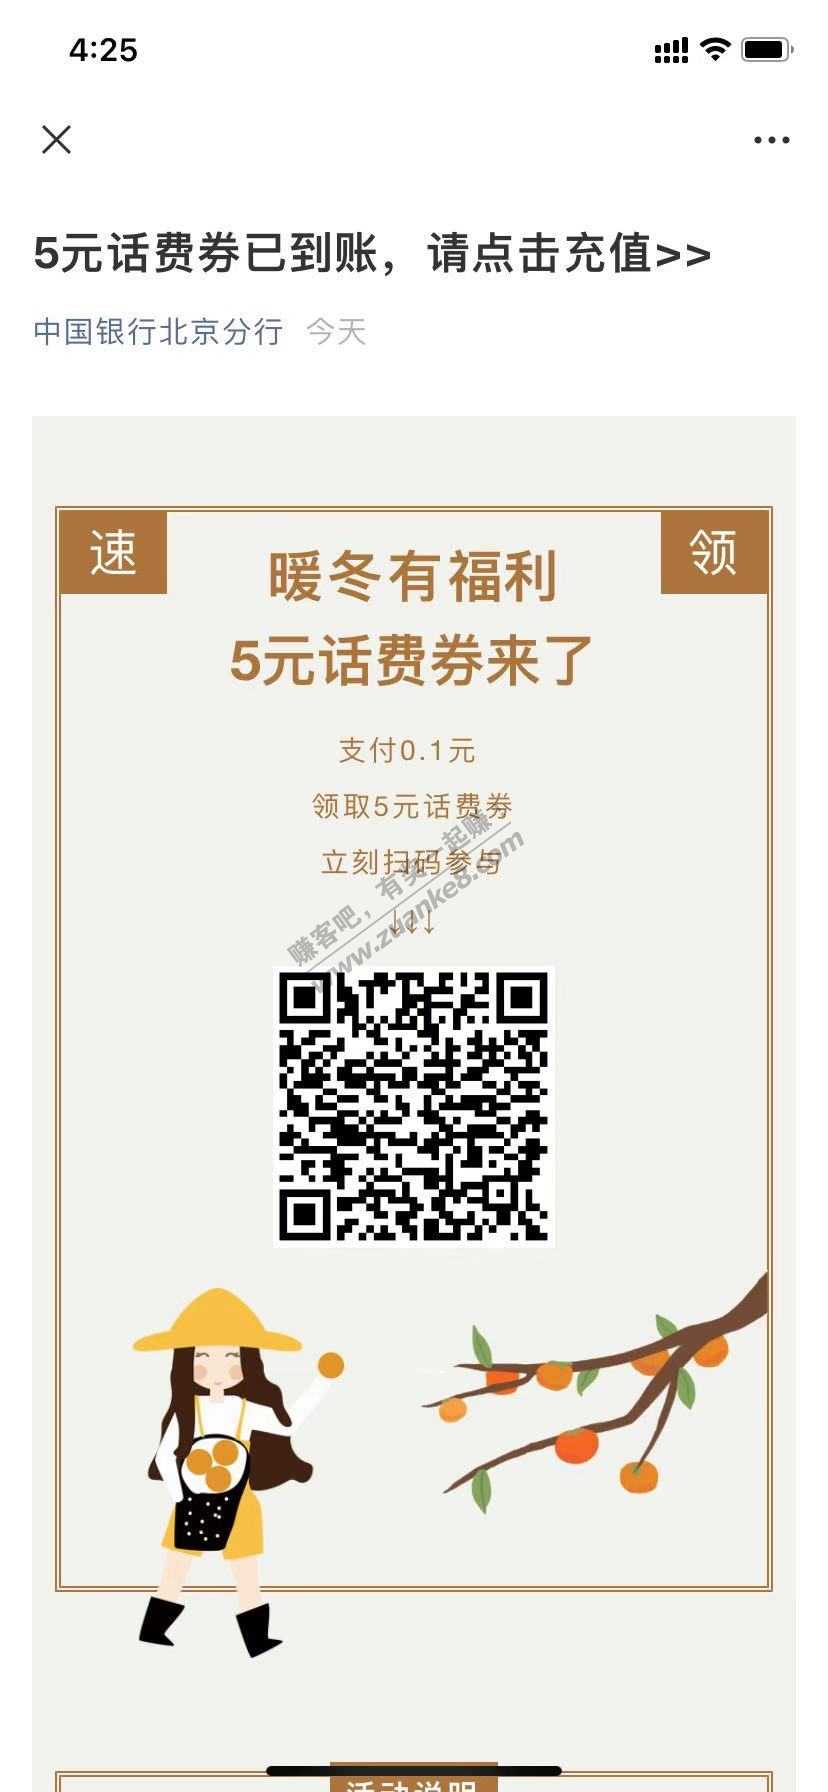 中国银行 北京分行五元话费-惠小助(52huixz.com)